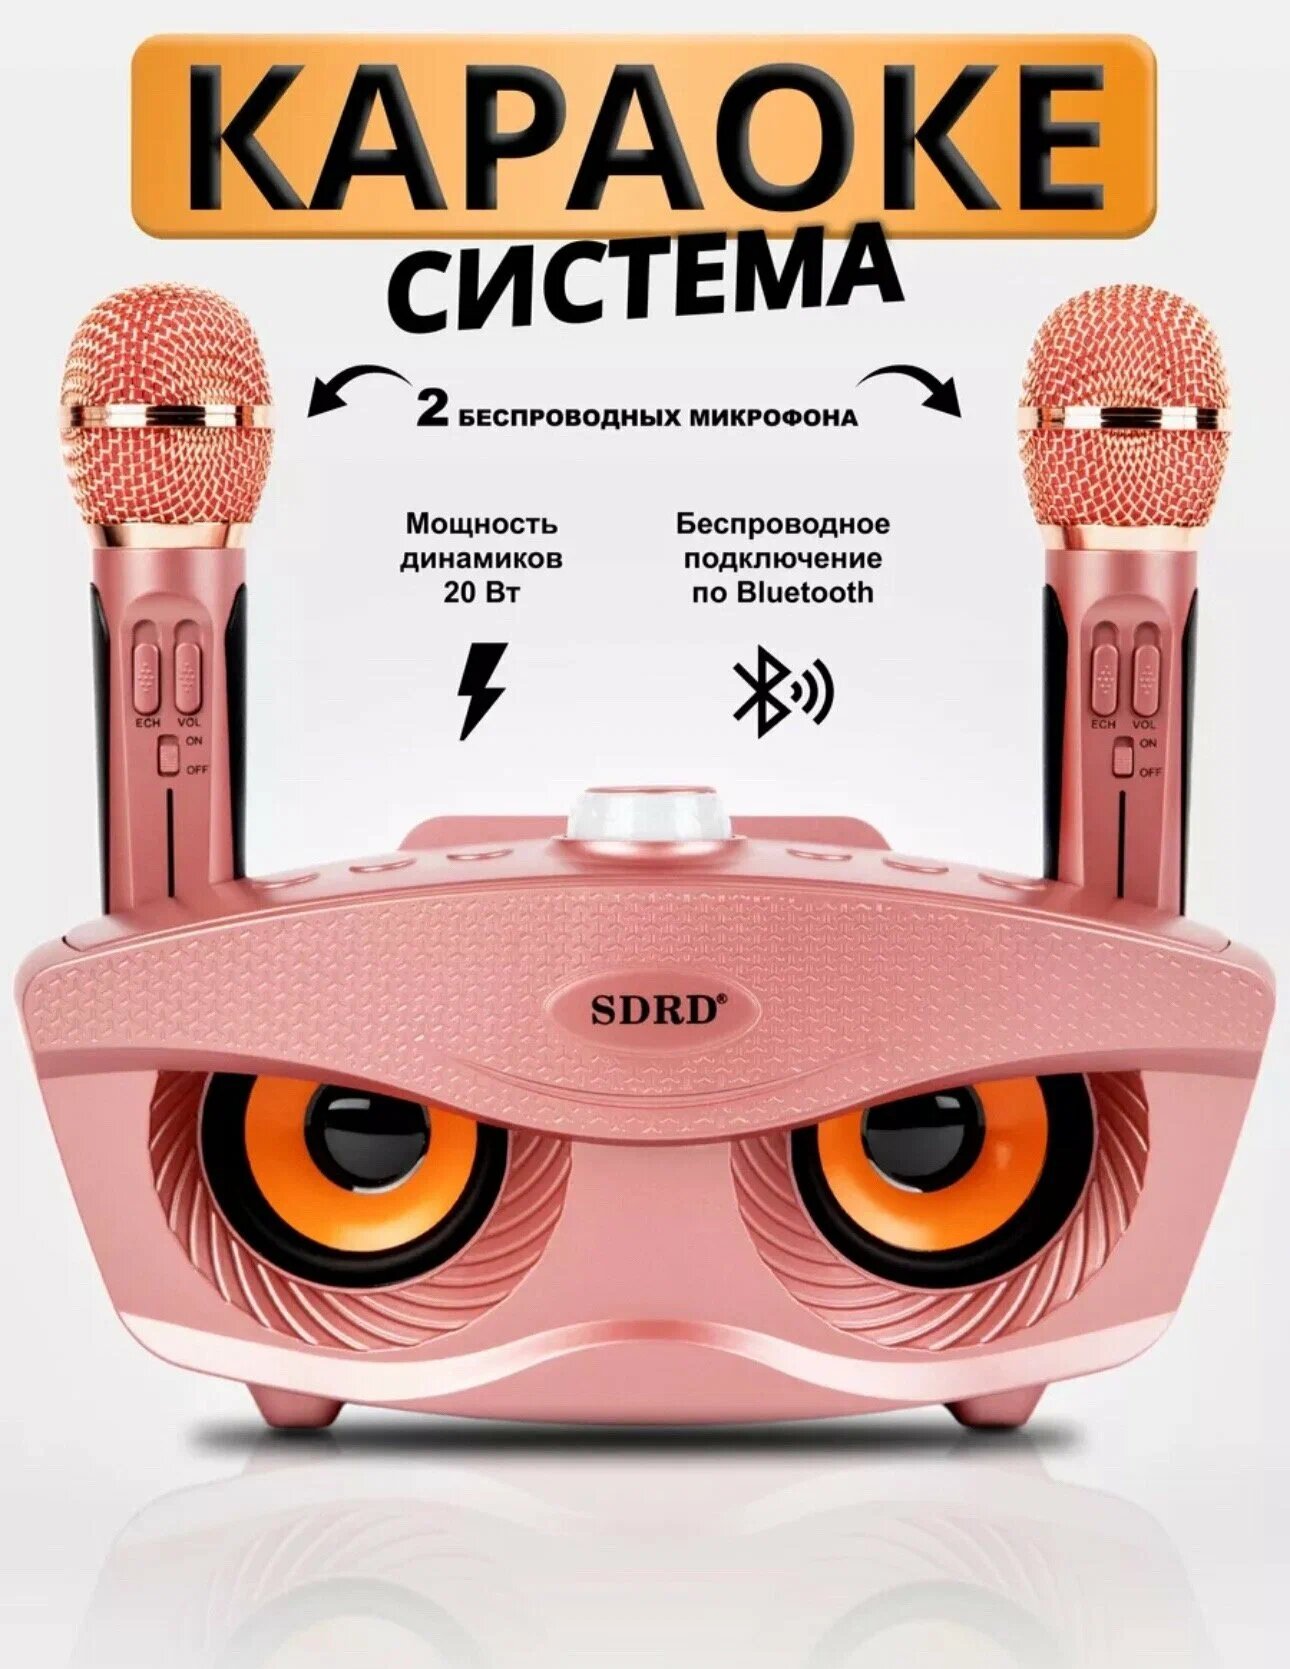 Караоке-система SDRD с двумя микрофонами для дома розовая